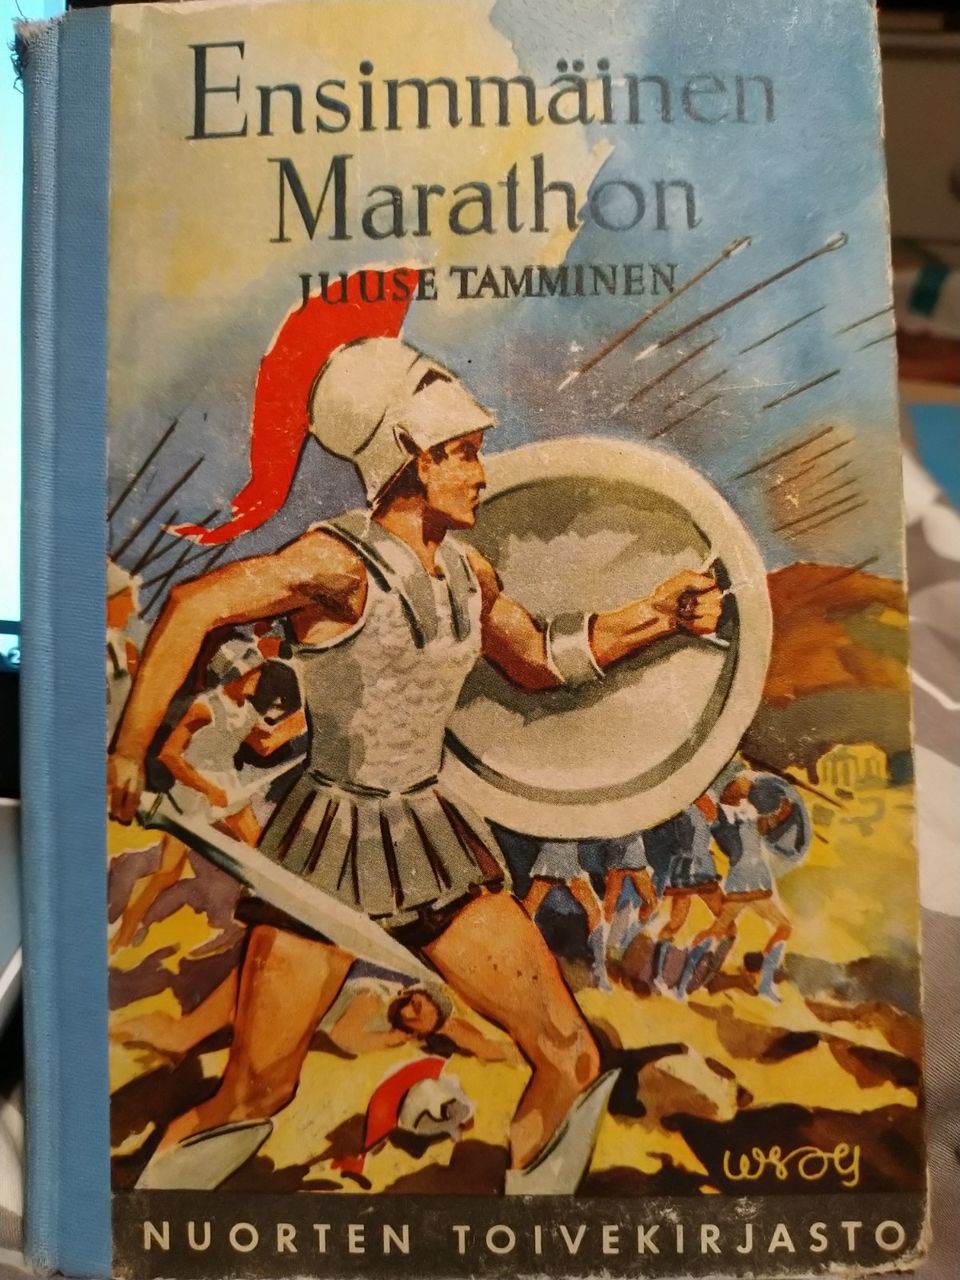 Ensimmäinen Marathon - Juuse Tamminen (1951)